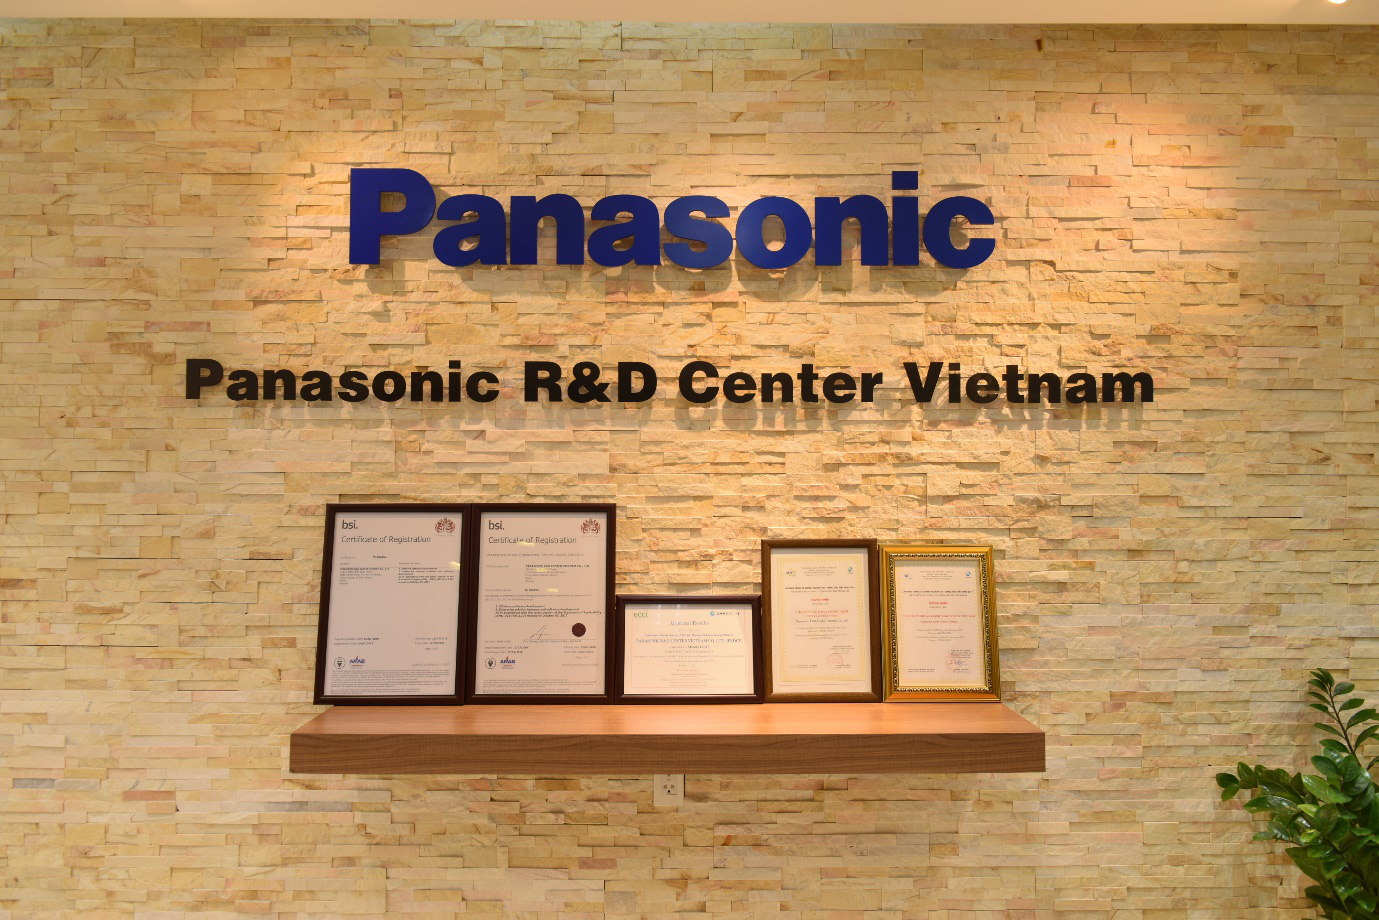 Có gì trong những cái nôi nghiên cứu và phát triển tầm cỡ khu vực của Panasonic tại Việt Nam? - Ảnh 1.